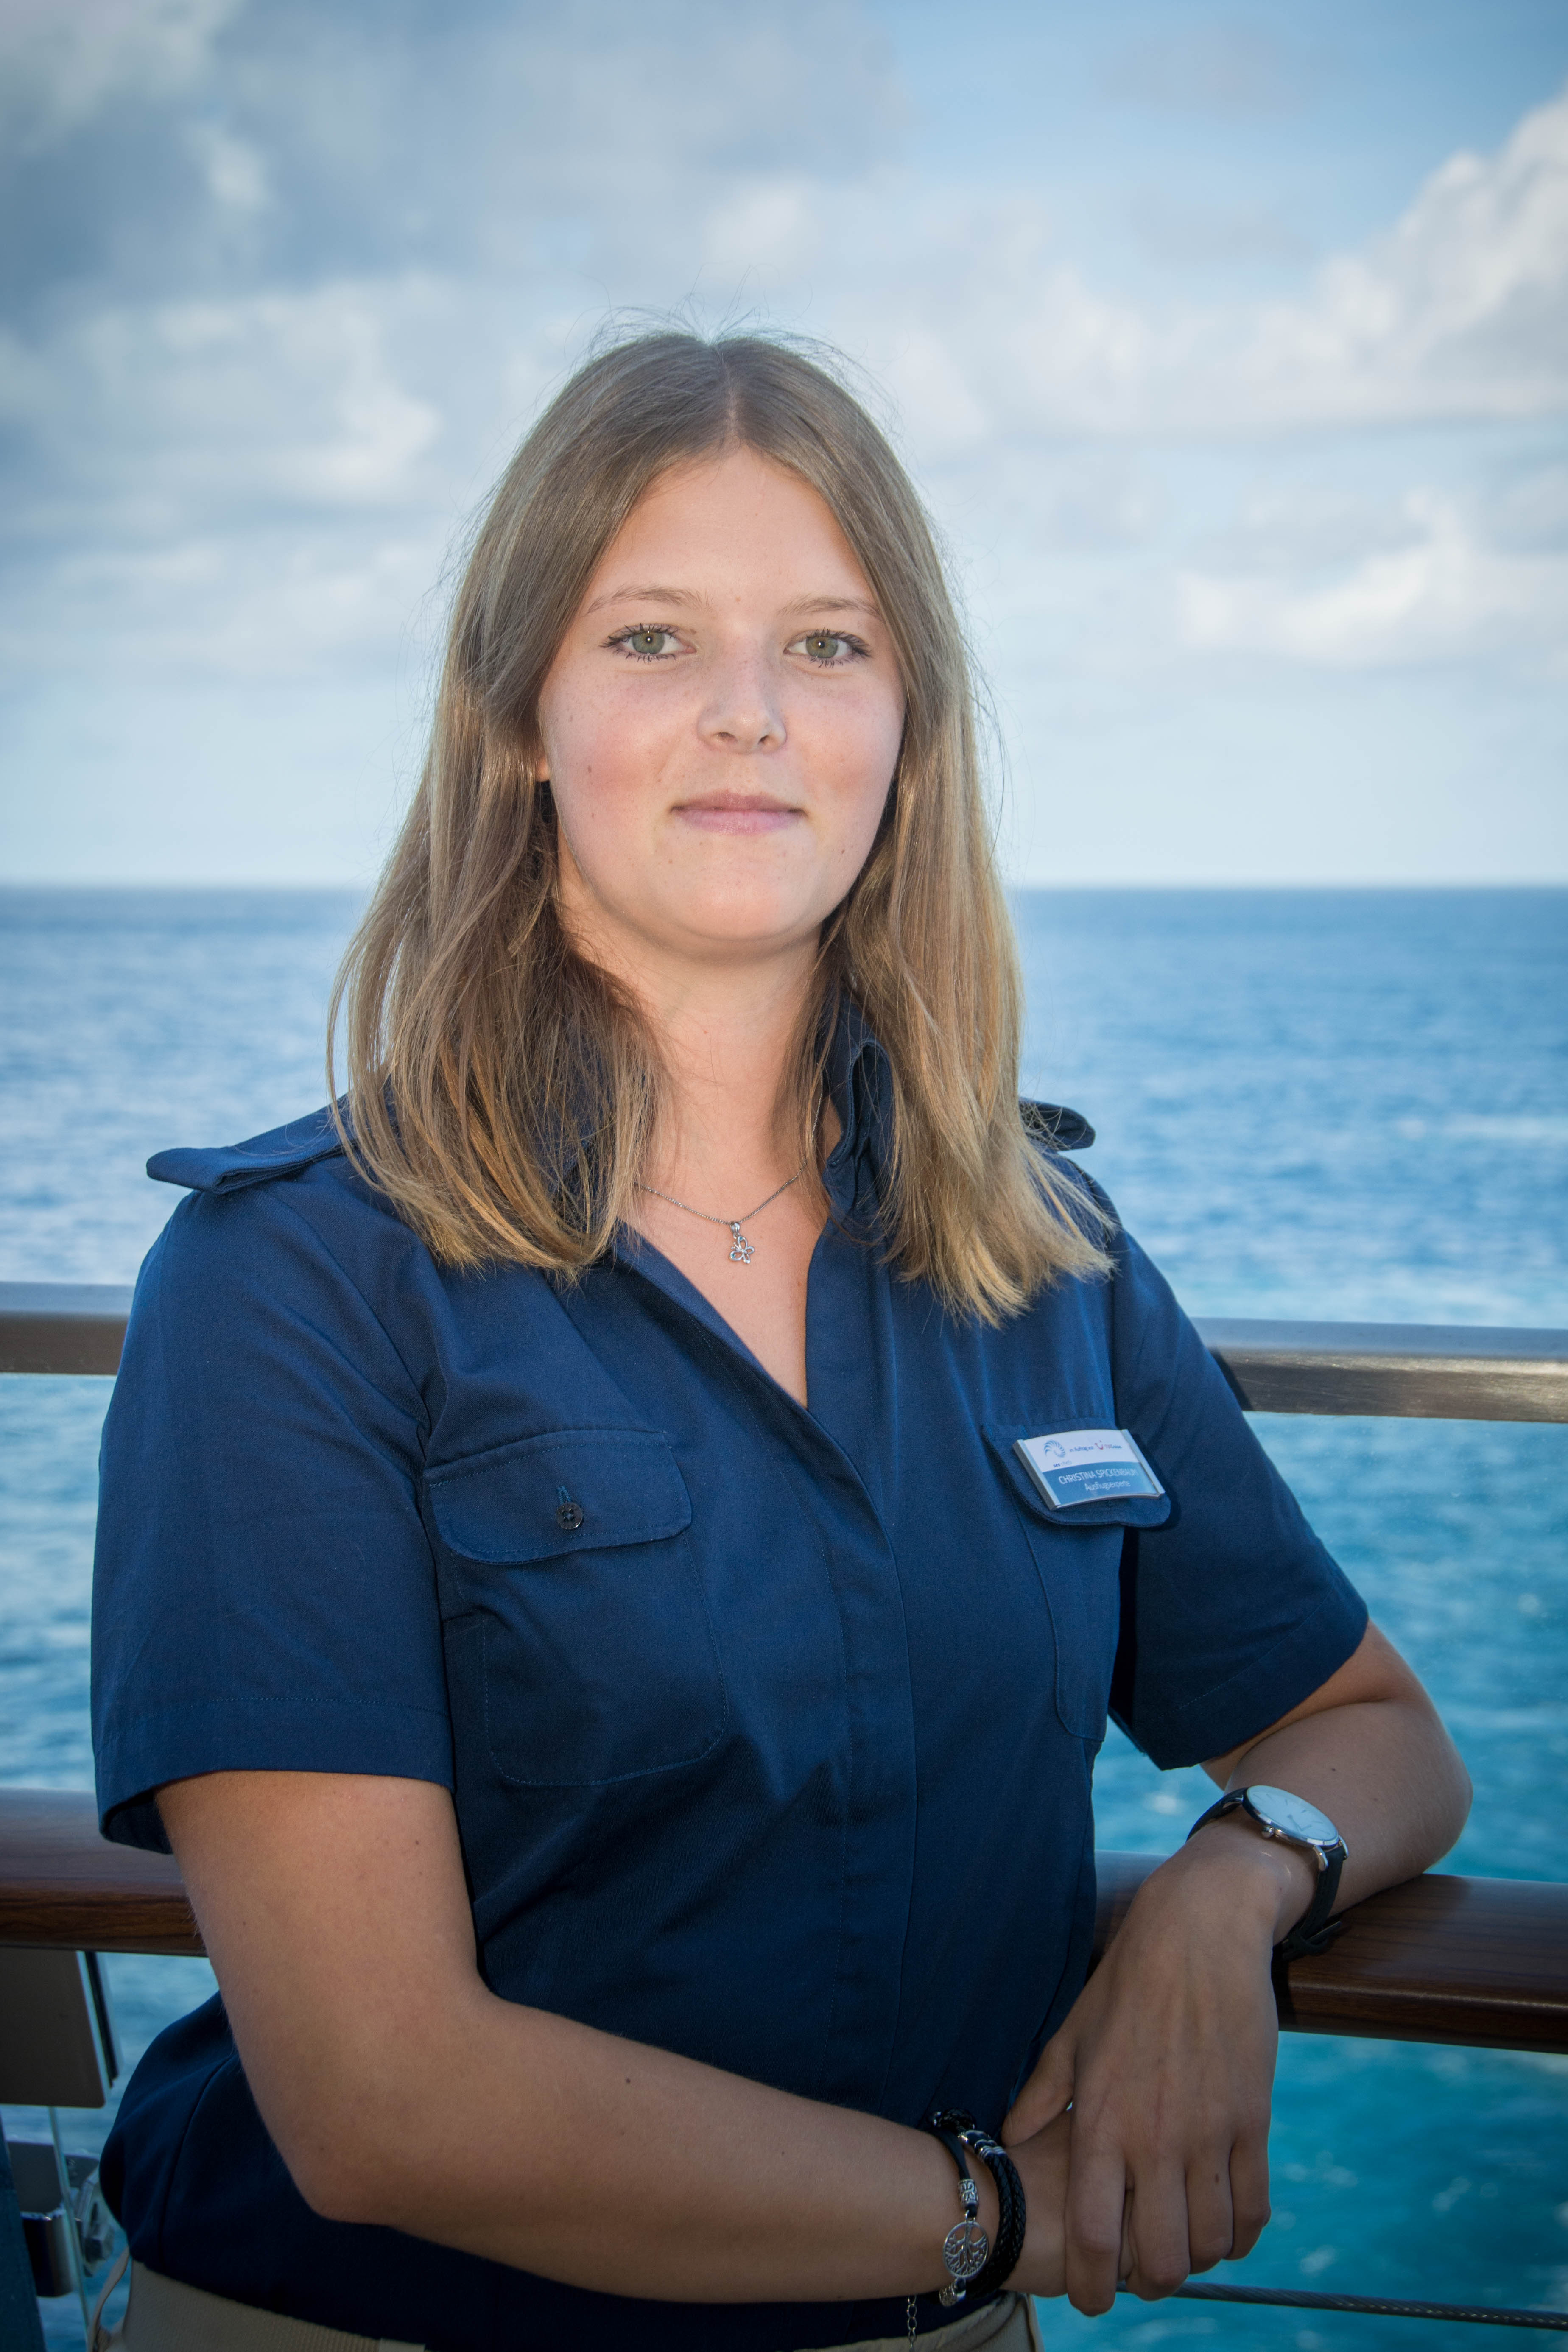 Mein Schiff Ausflugsexpertin Christina Spickenbaum